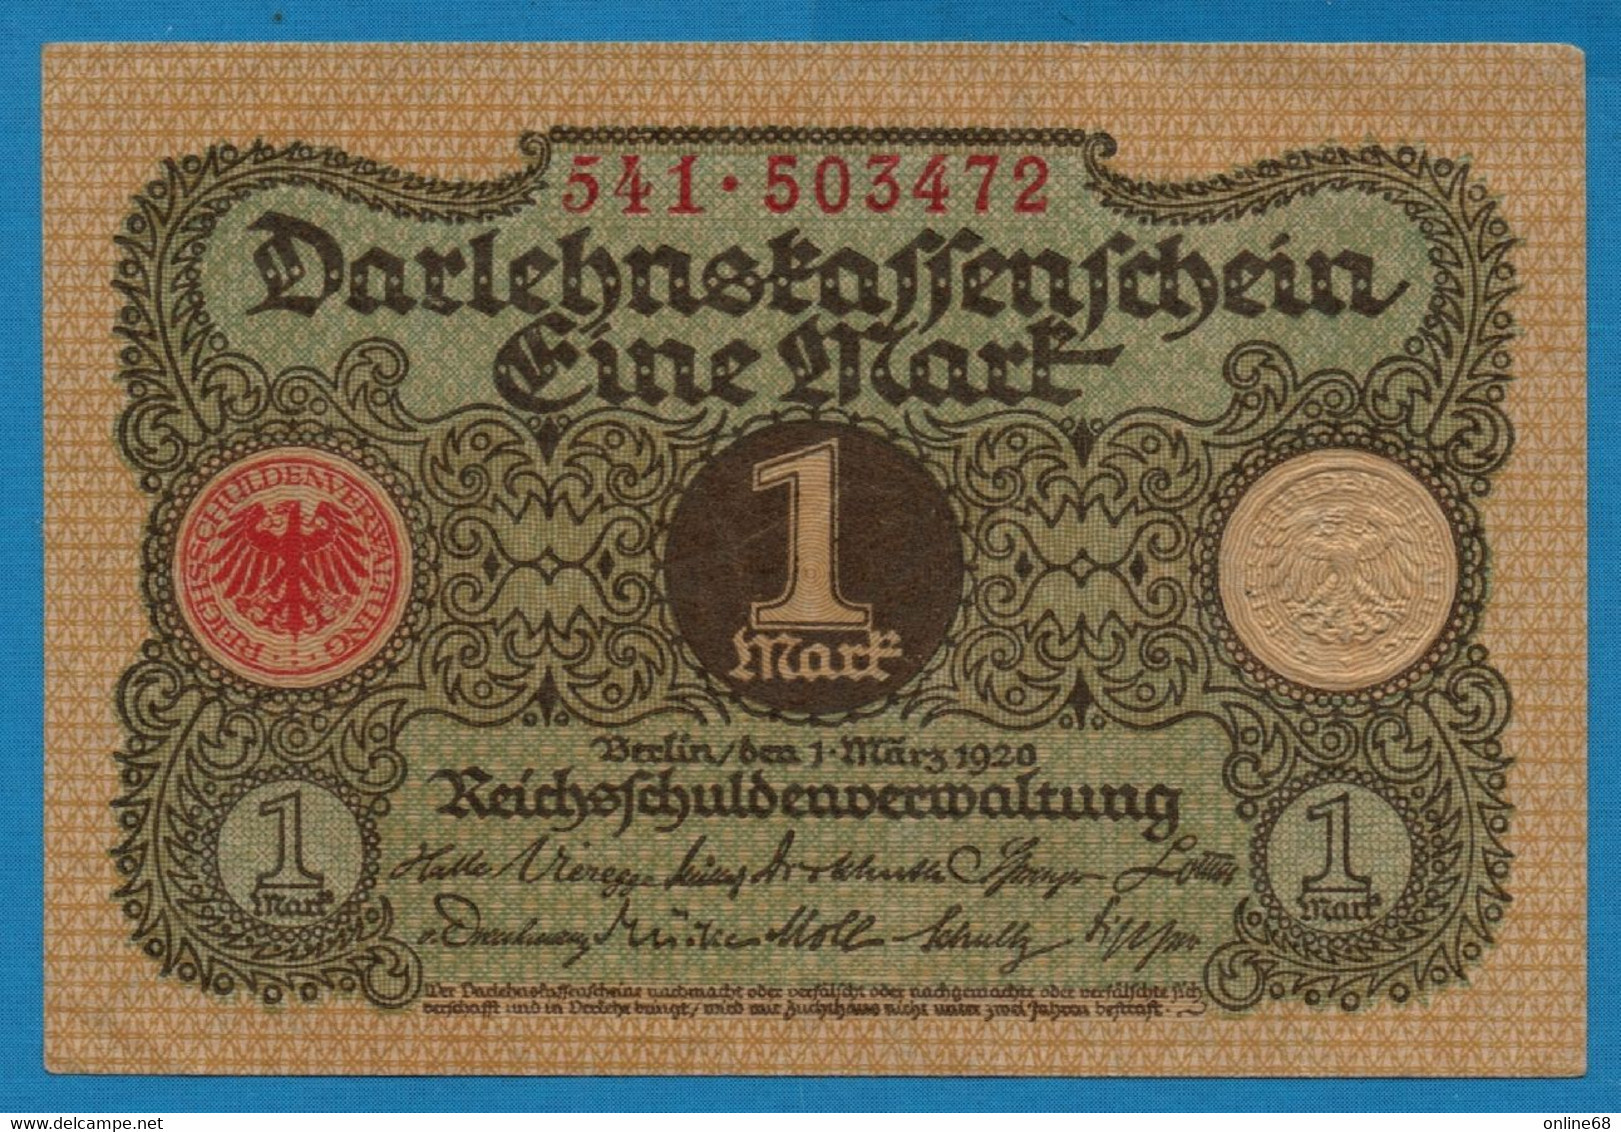 DEUTSCHES REICH 1 MARK 01.03.1920  # 541.503472 P# 58  DARLEHENSKASSENSCHEIN - Imperial Debt Administration